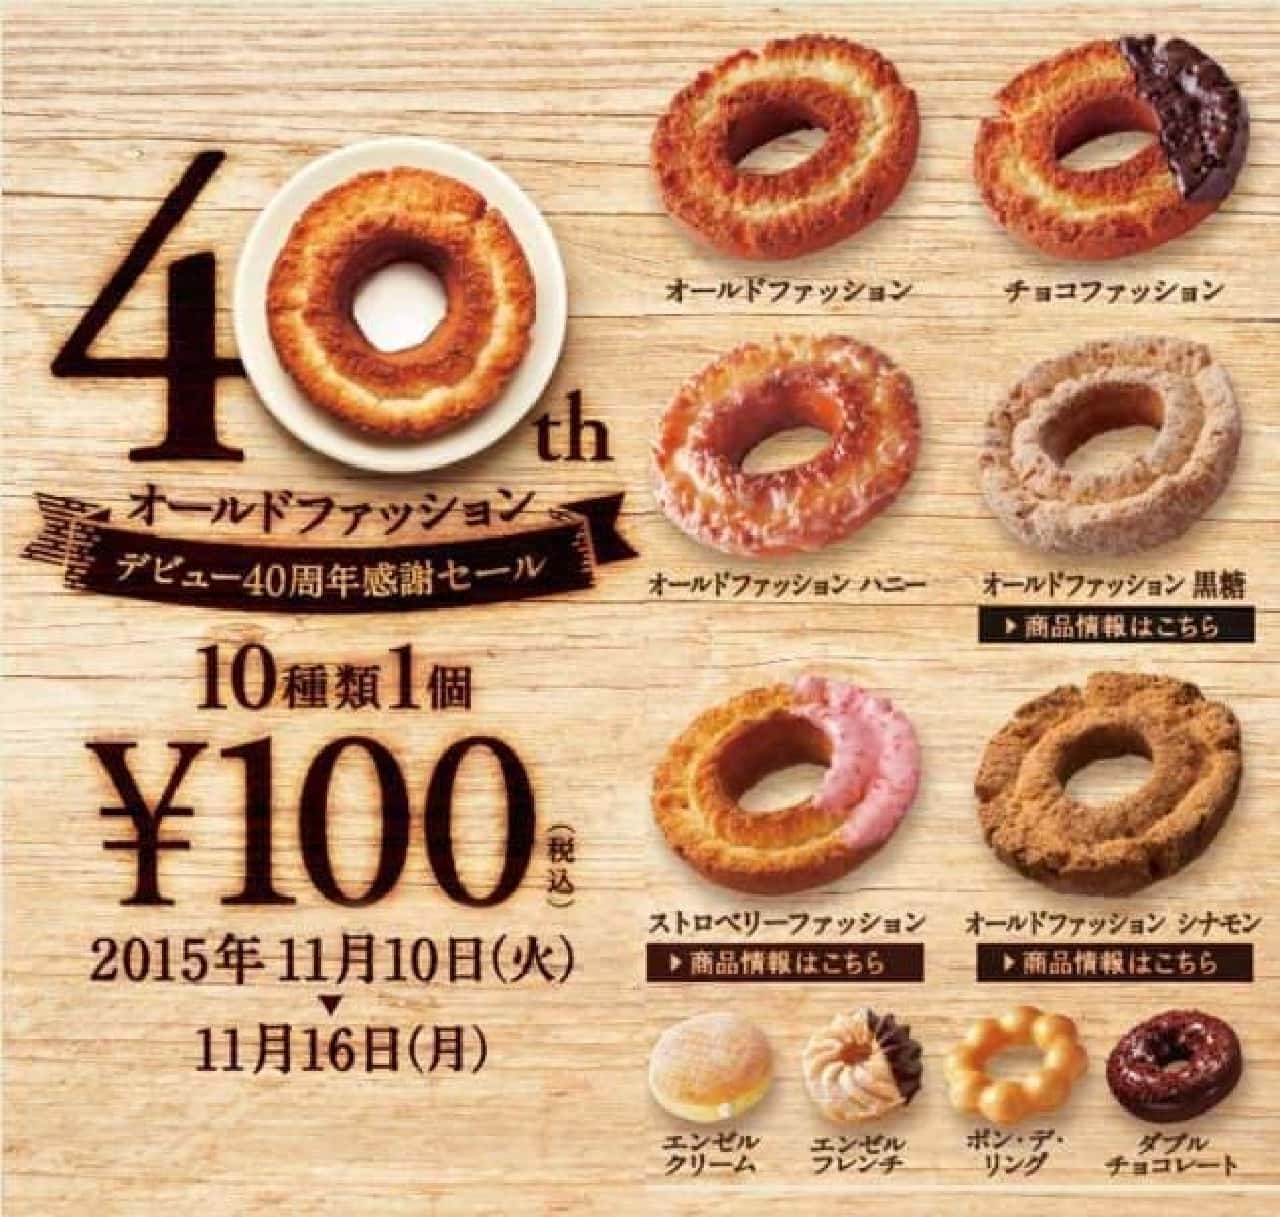 100 yen sale held at Mister Donut! (Image source: Mister Donut official website)